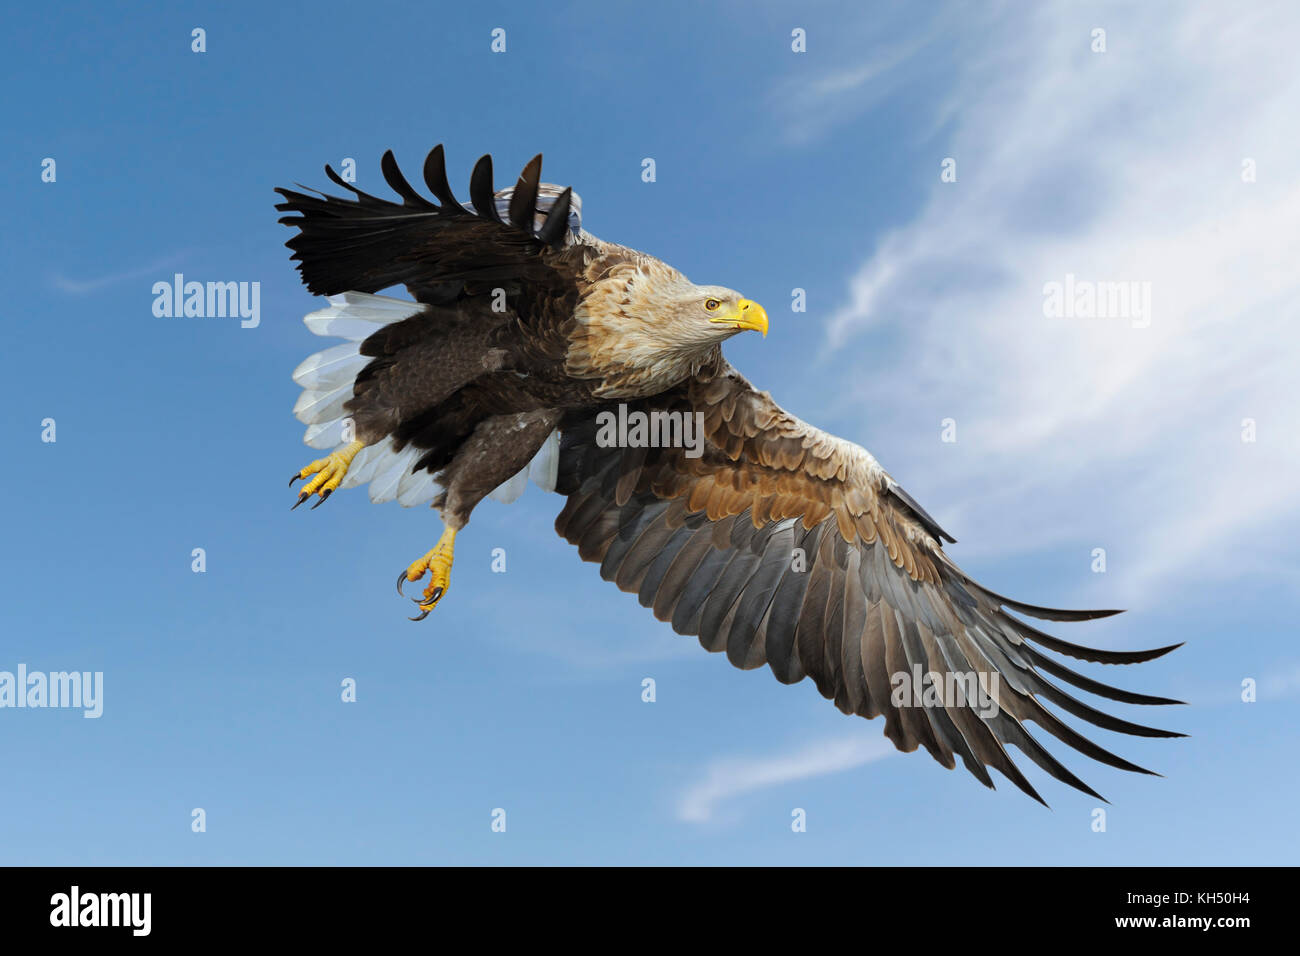 Aquila dalla coda bianca / Aquila di mare ( Haliaeetus albicilla ) impressionante adulto, in volo contro il cielo blu, caccia, appena prima di afferrare per la preda. Fauna selvatica Foto Stock